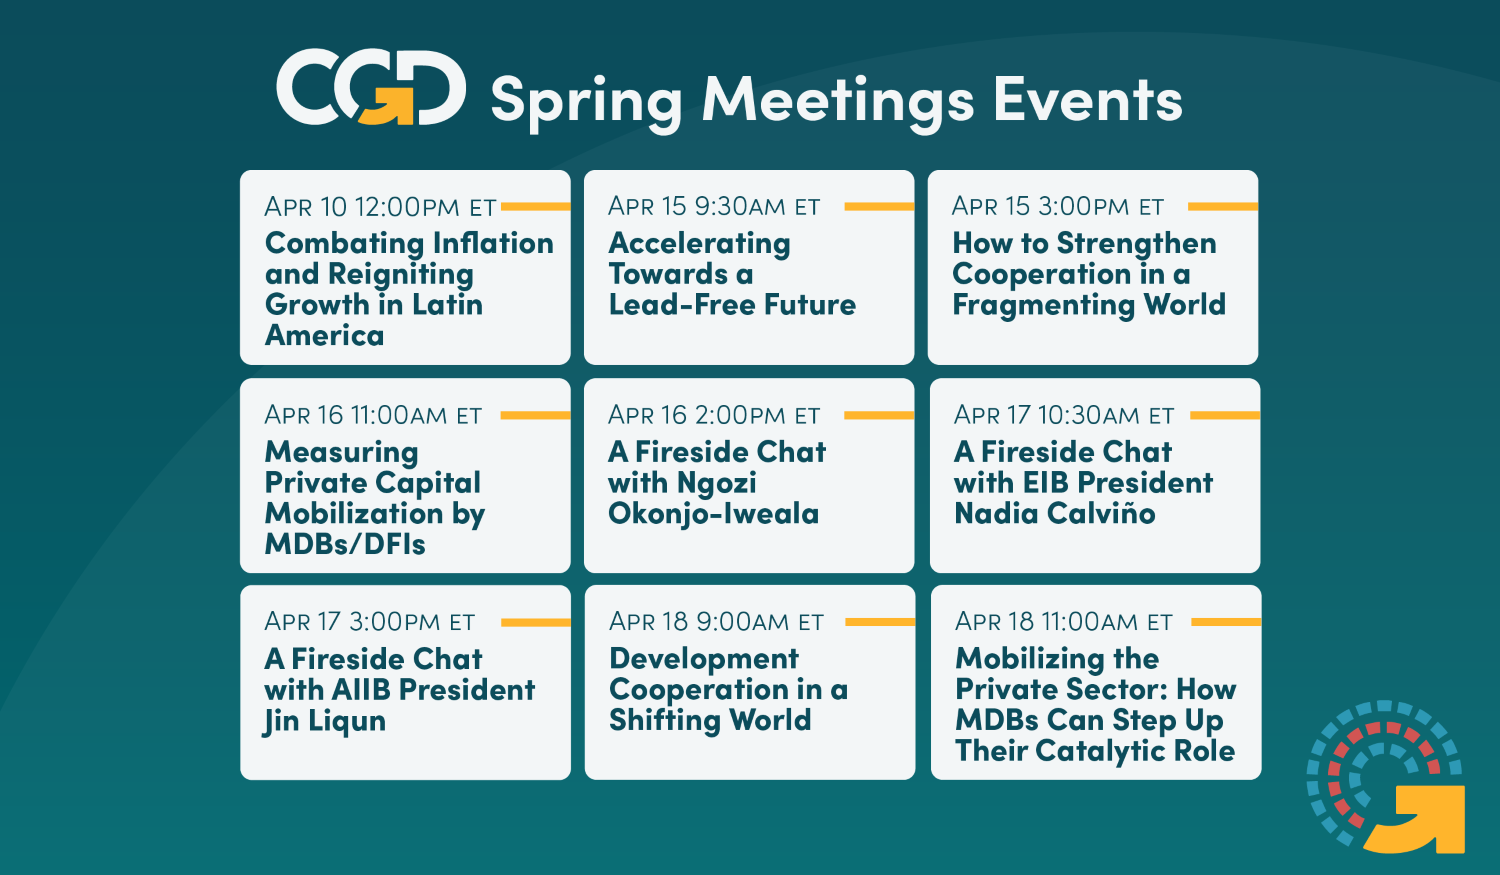 CGD Spring Meetings Calendar